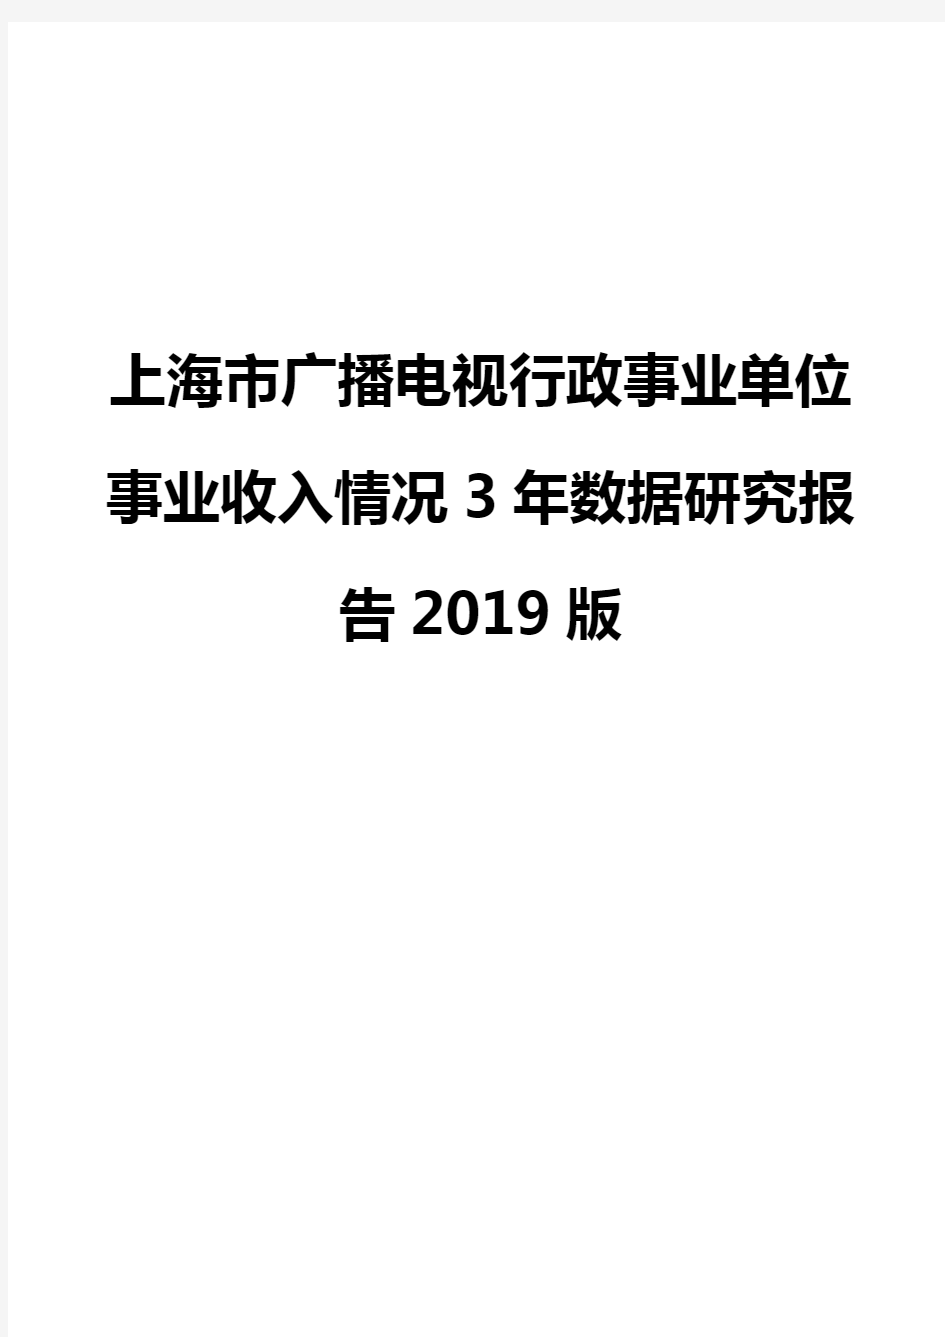 上海市广播电视行政事业单位事业收入情况3年数据研究报告2019版